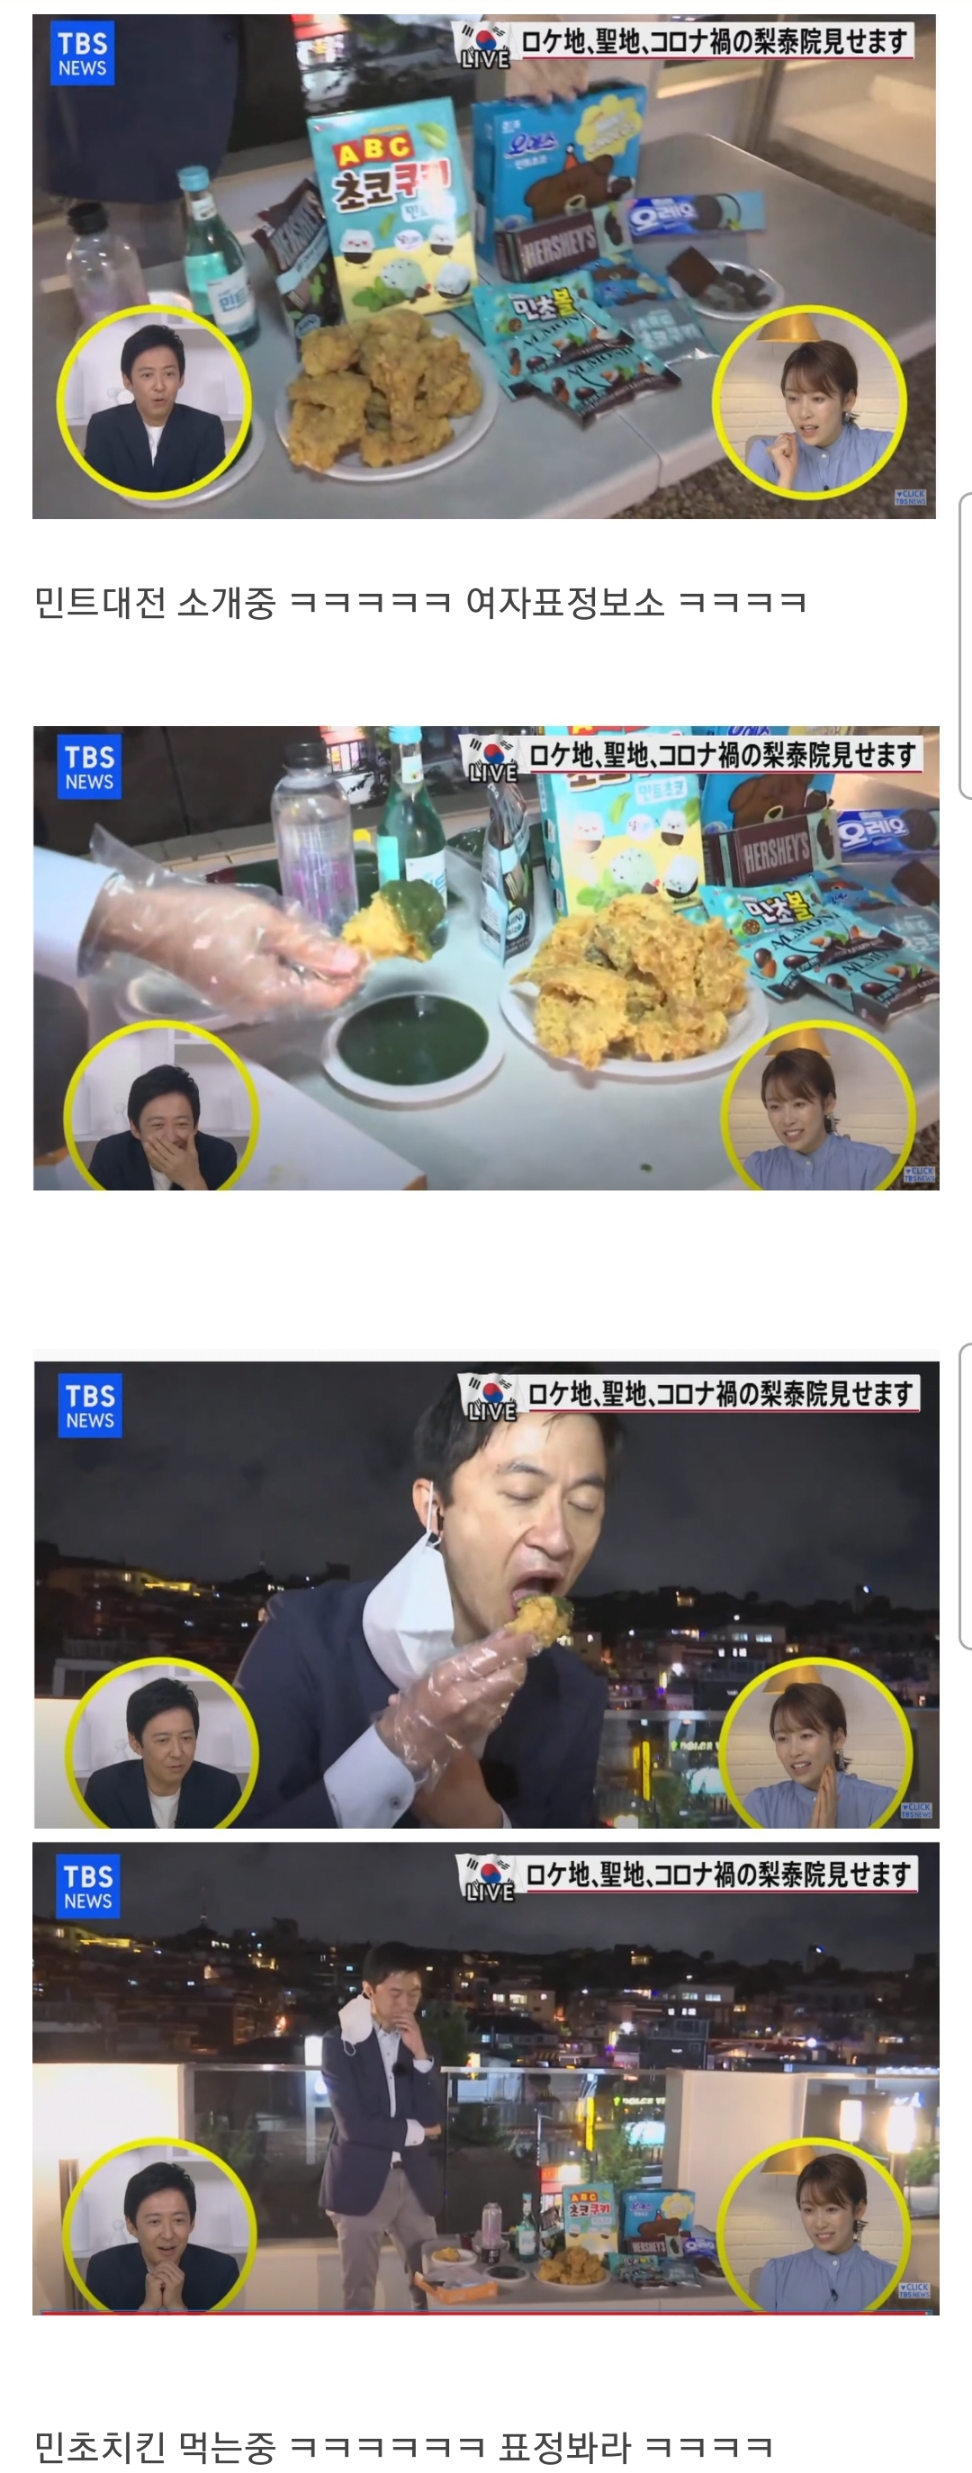 韓国で流行っているお菓子を食べる日本の芸能